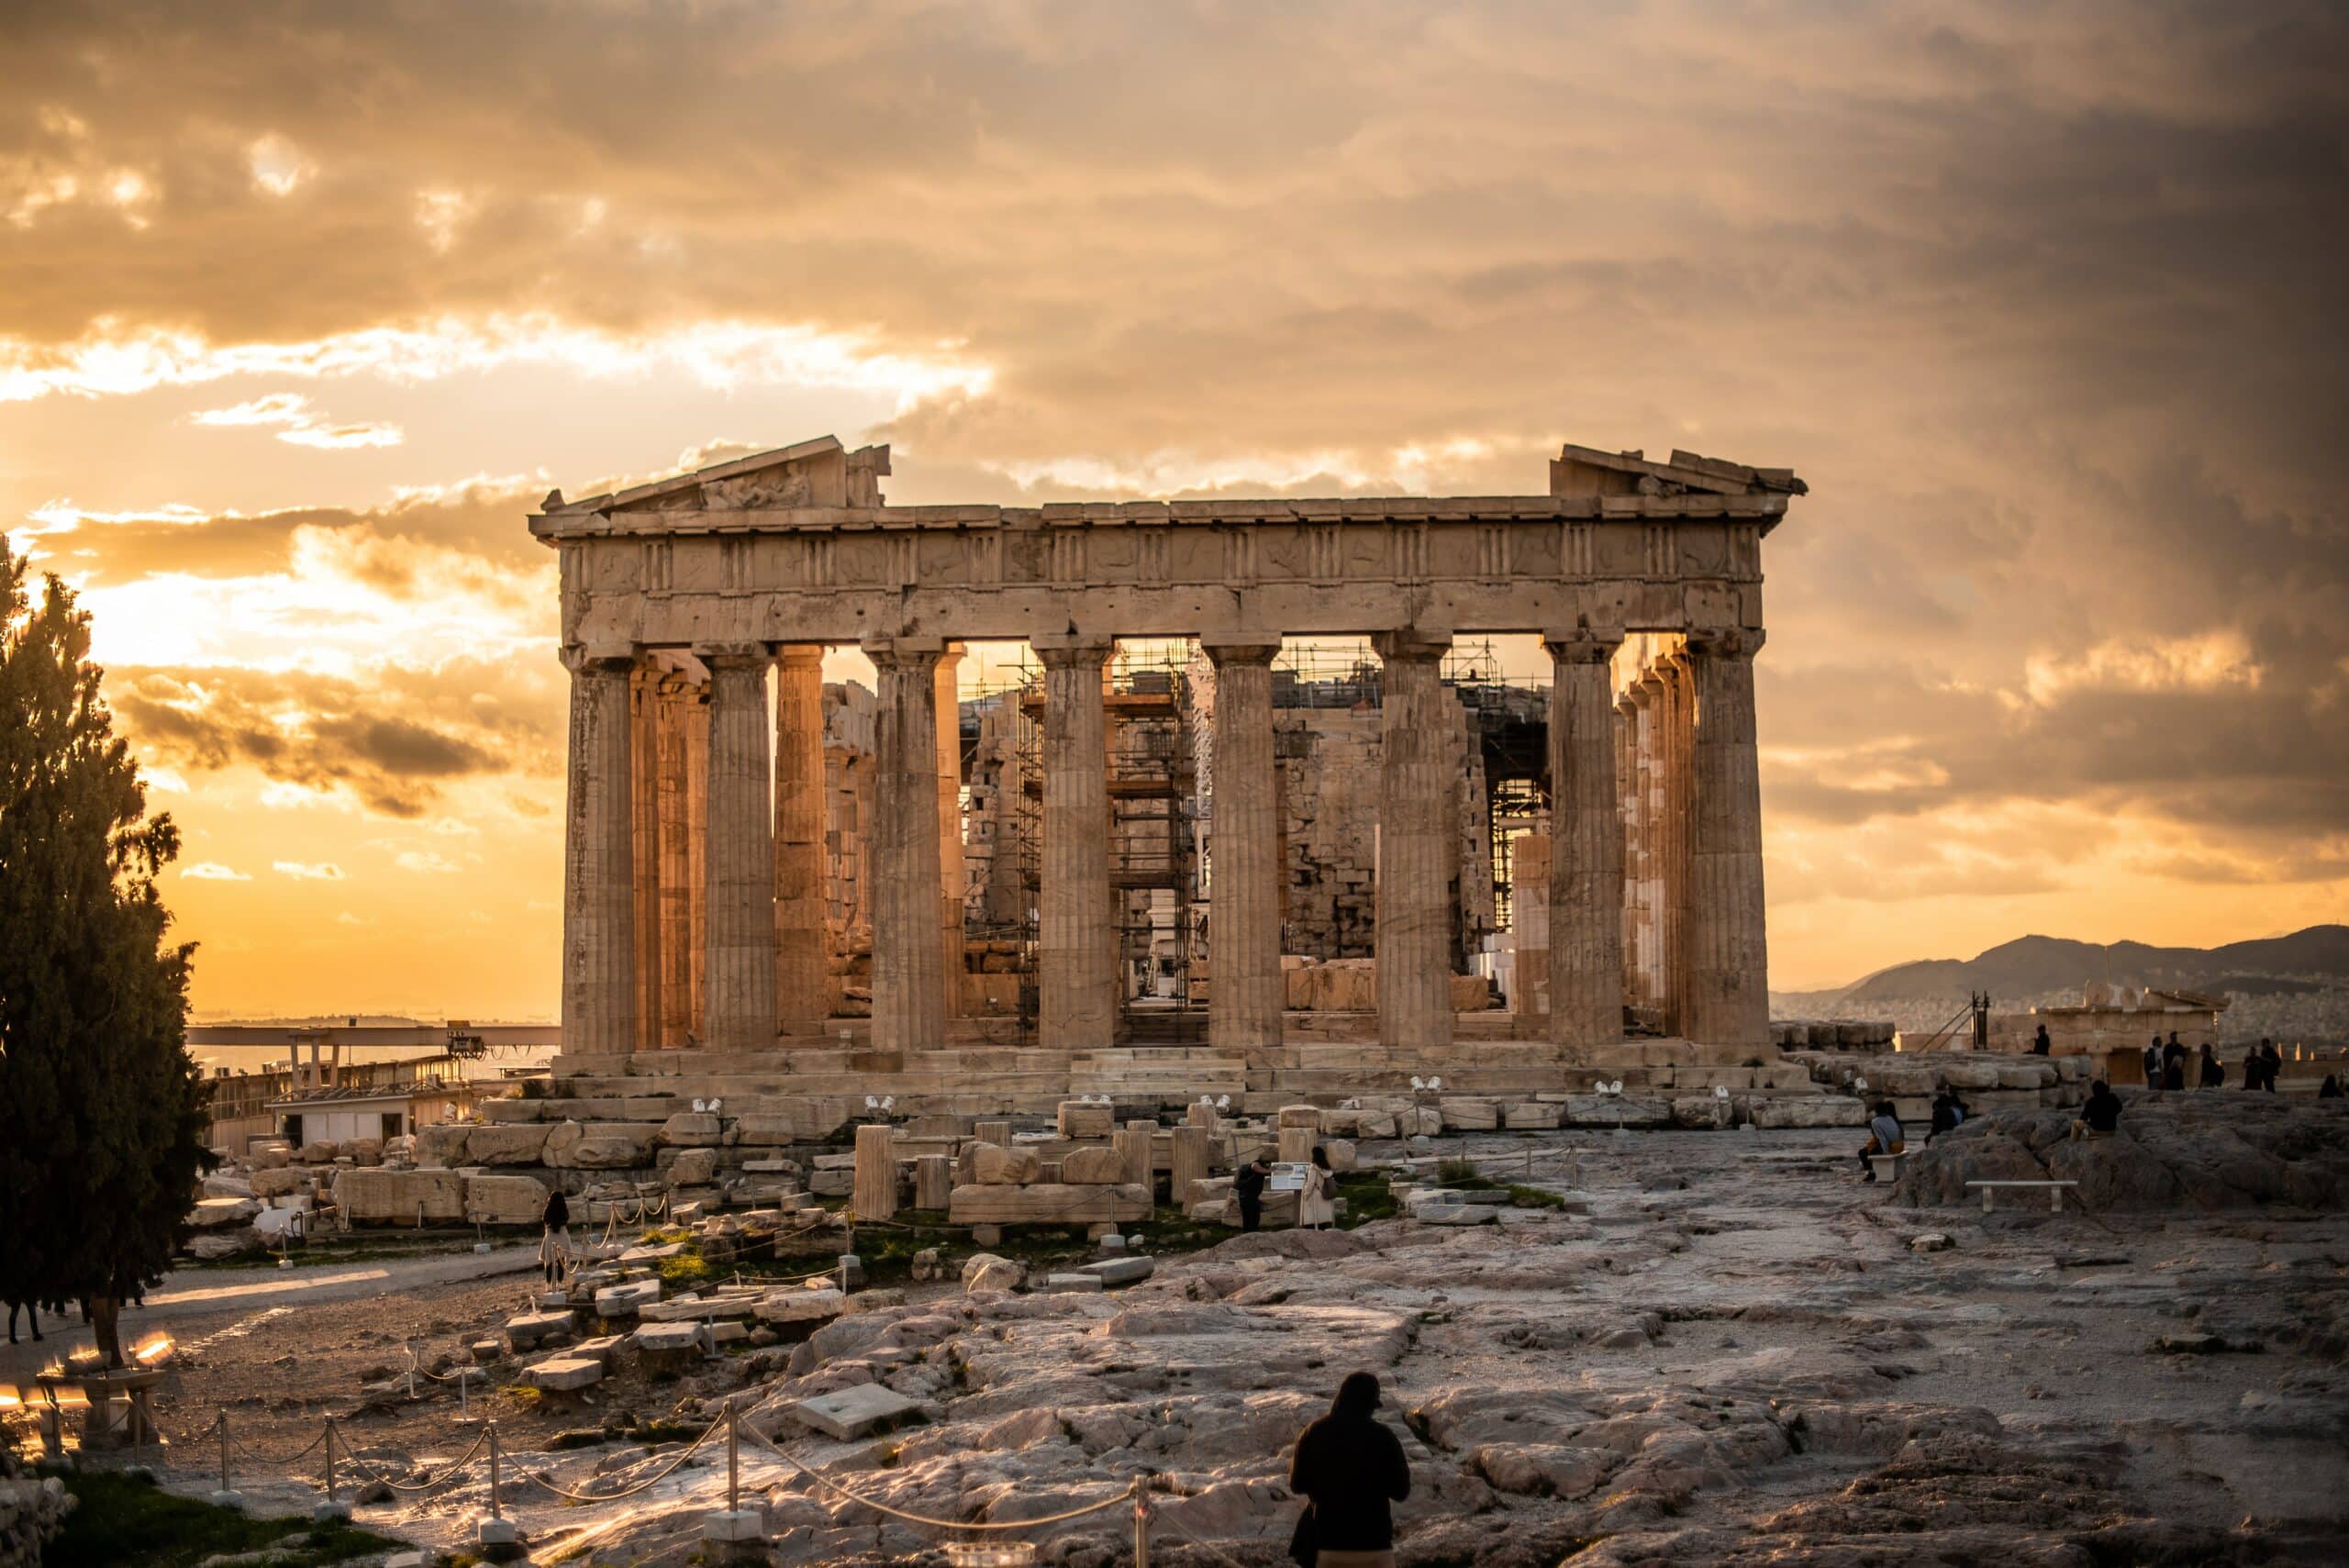 Edifício Partenon em ruinas ao pôr-do-sol para representar o chip de celular Atenas.